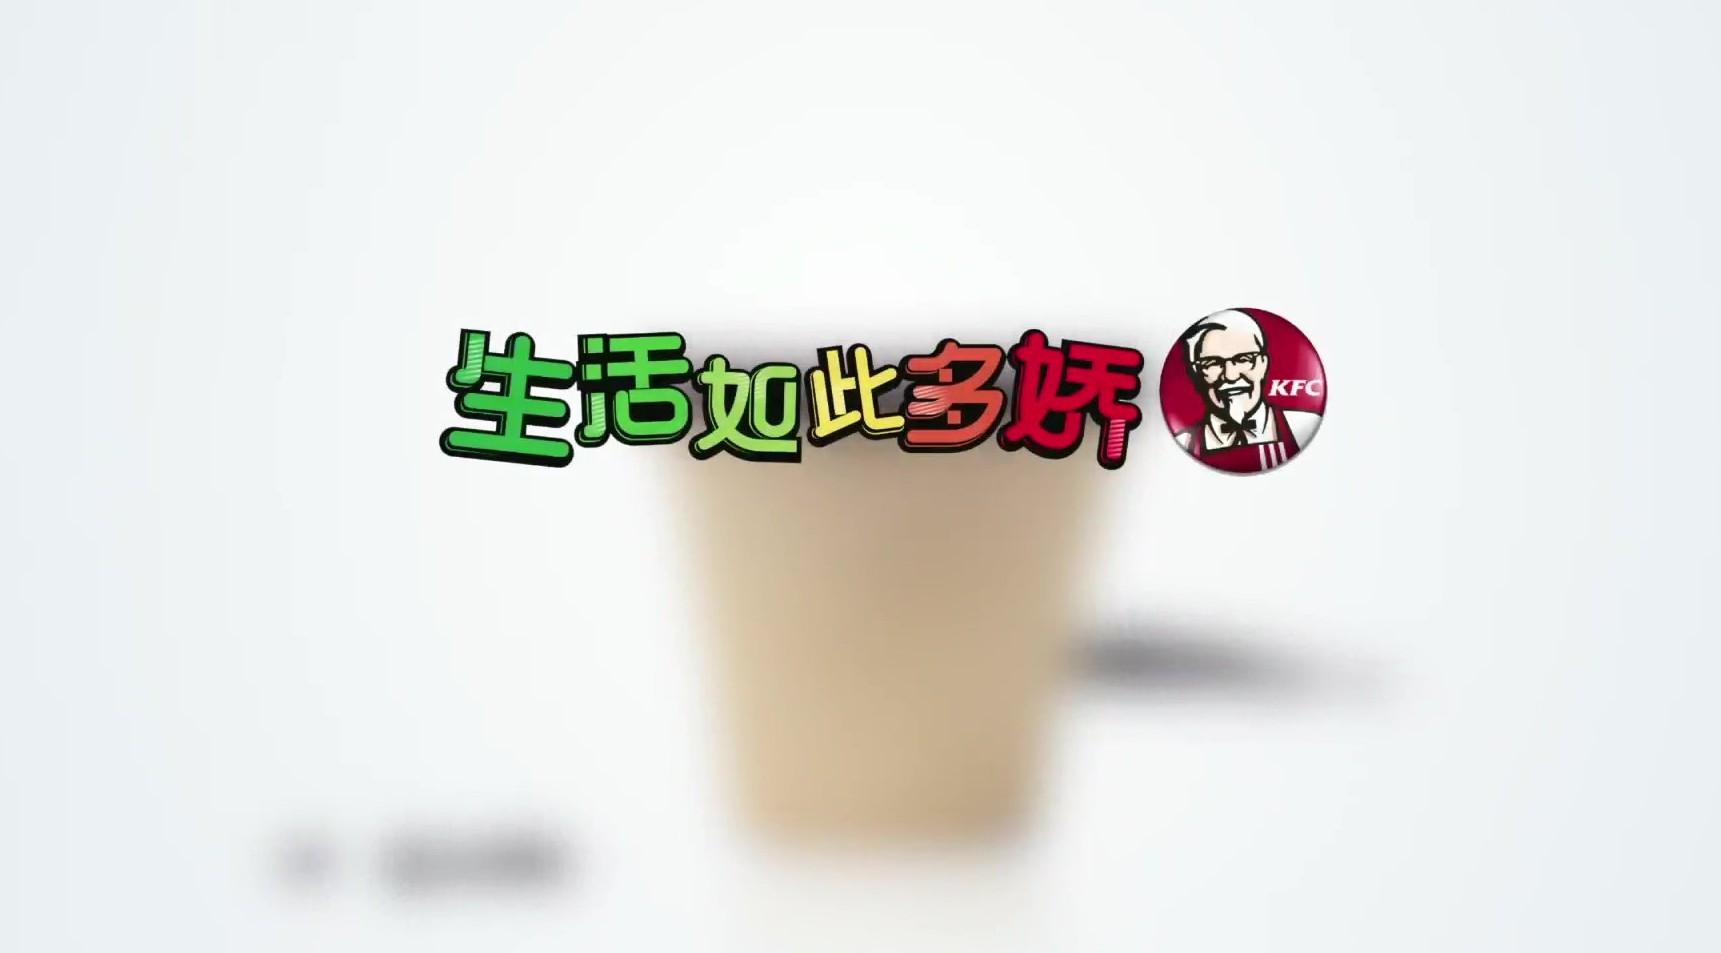 KFC咖啡杯广告花絮